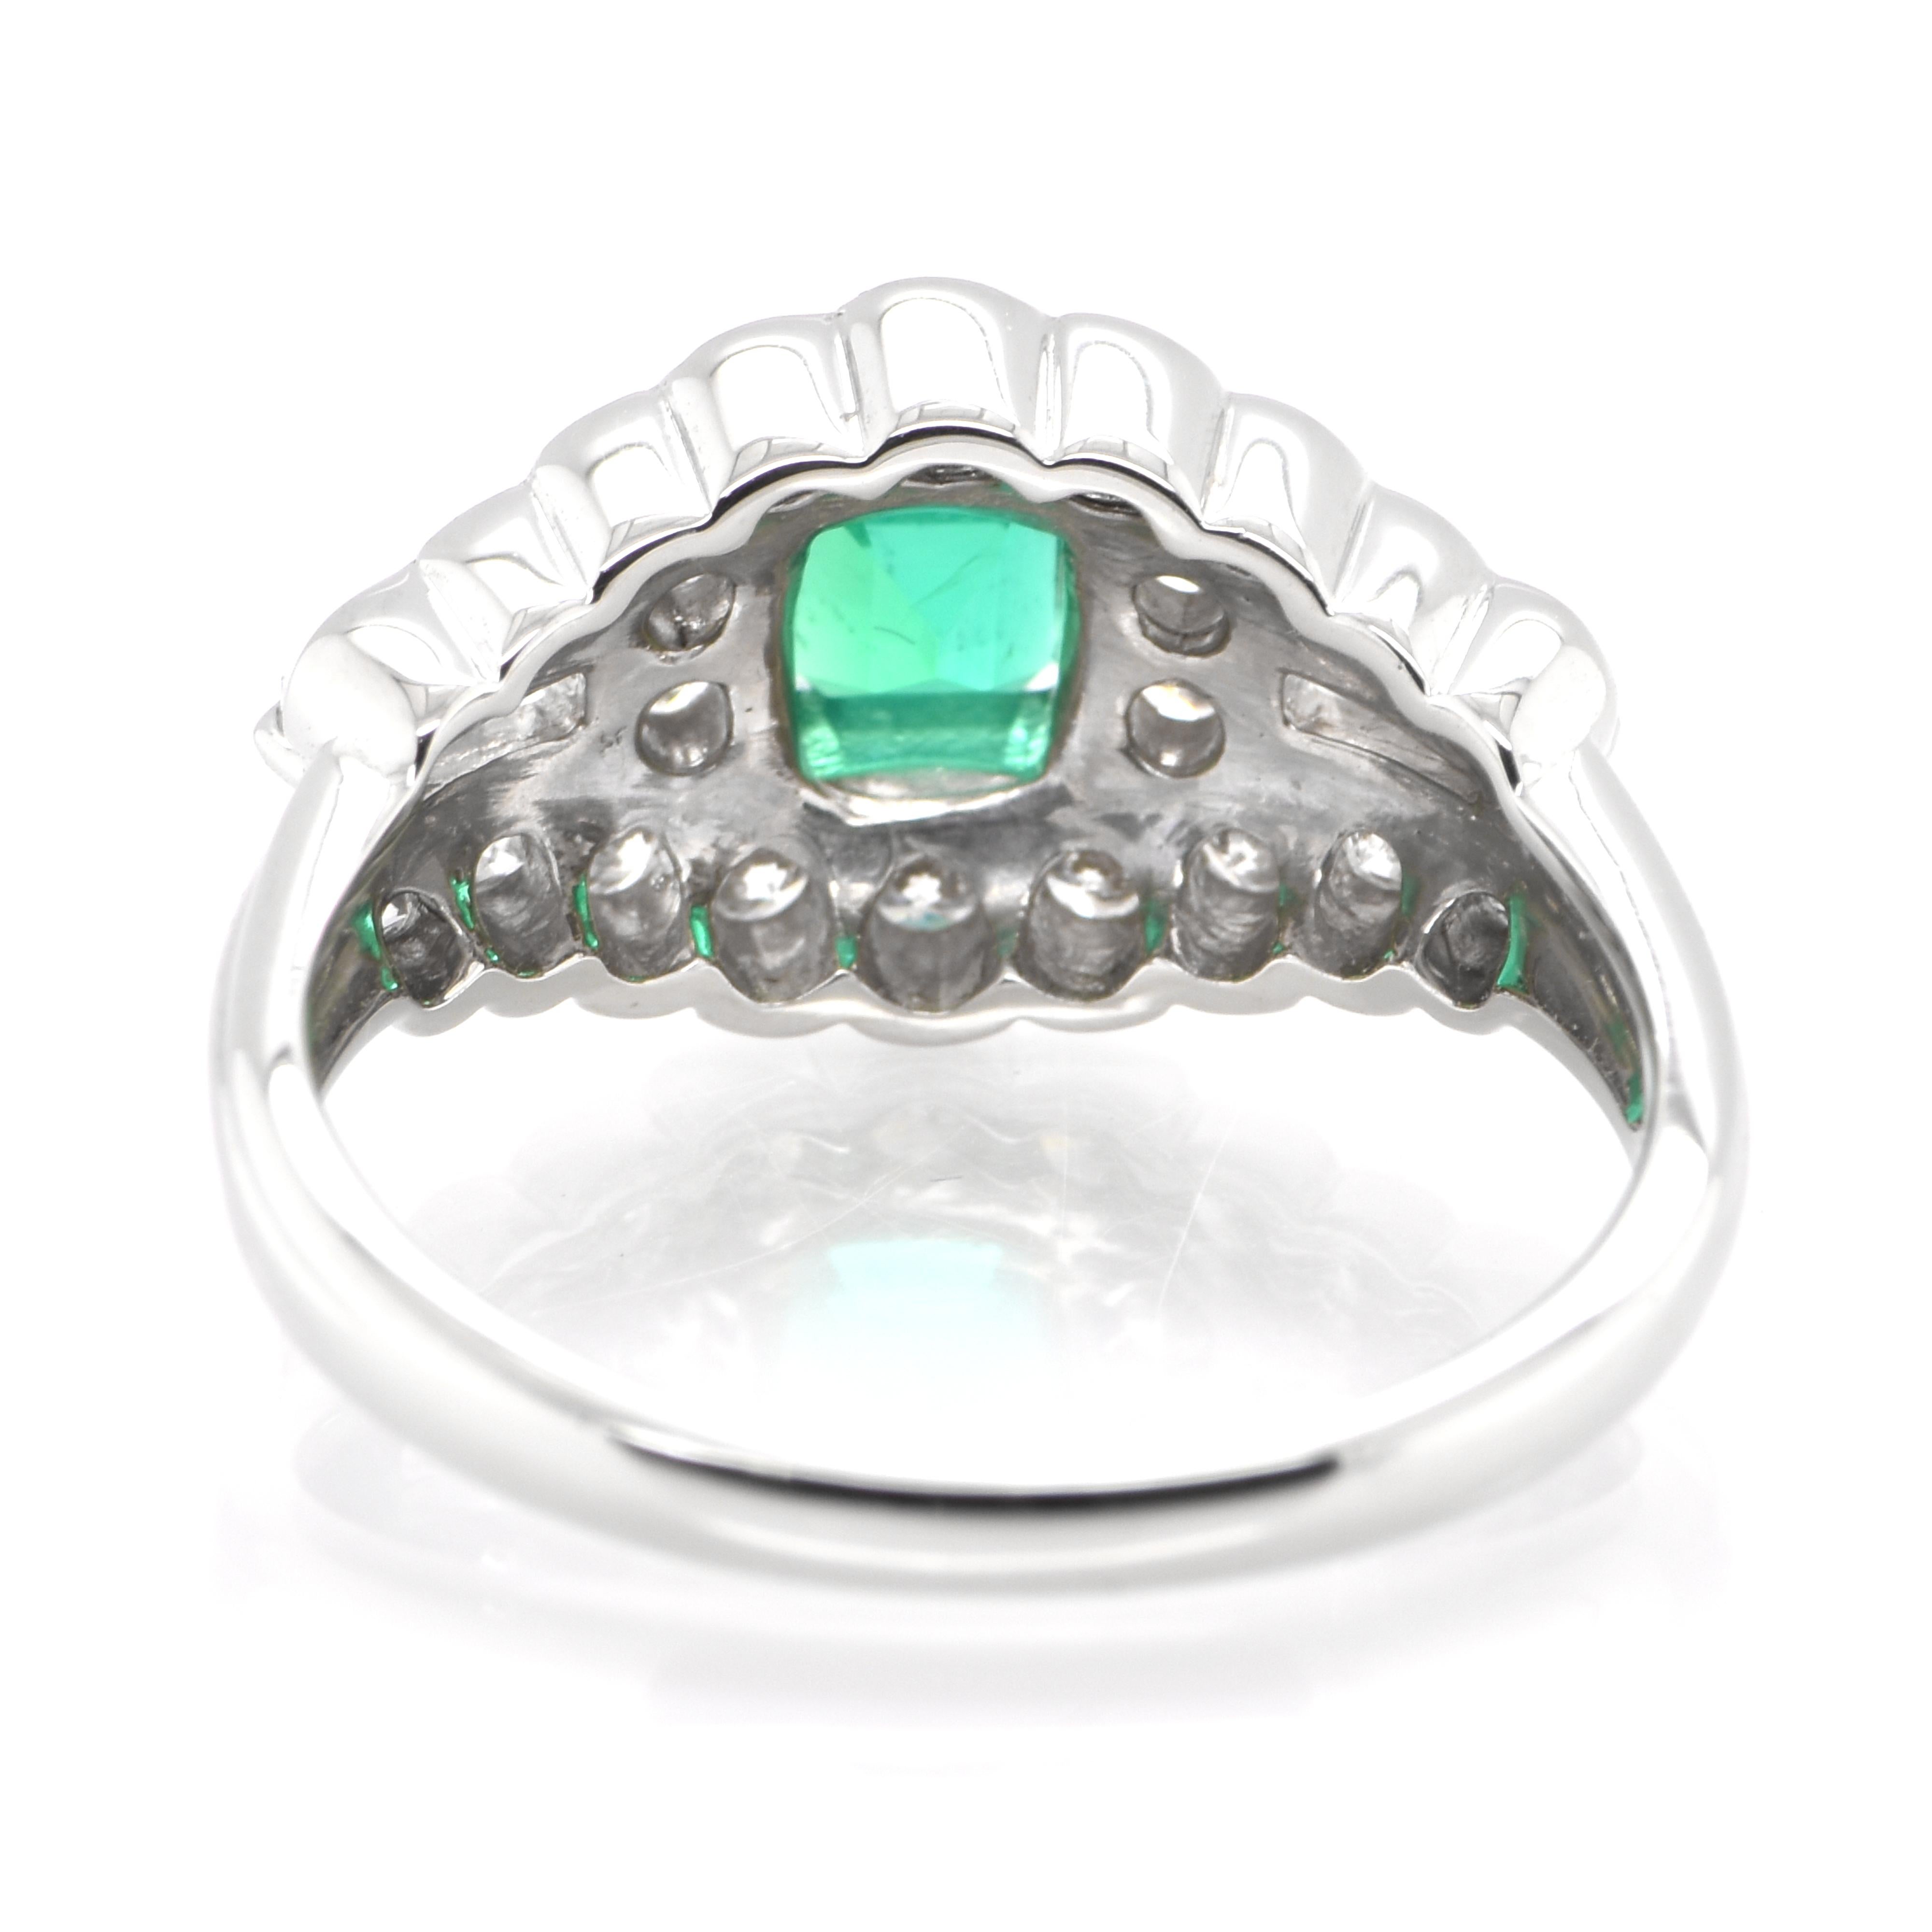 Women's 0.76 Carat Natural Emerald and Diamond Antique Ring Set in Platinum